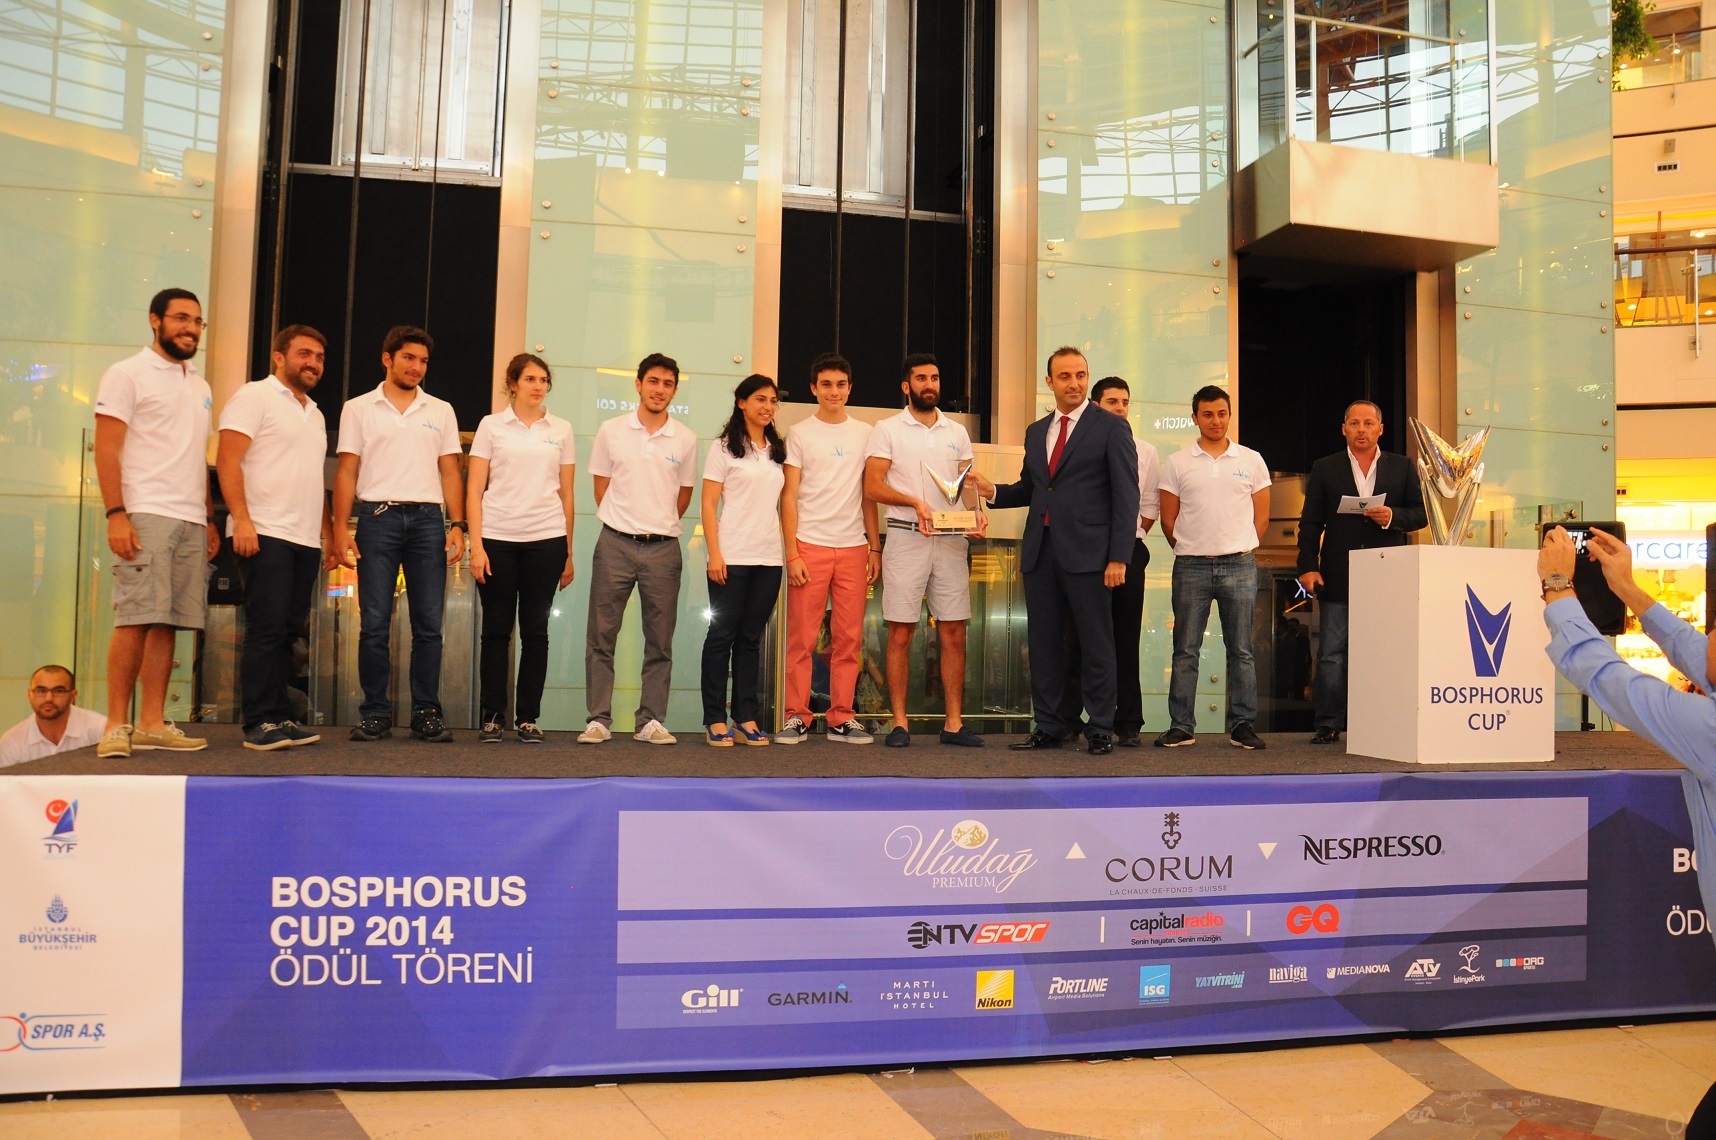 Bosphorus Cup ödül töreni İstinye Park'ta gerçekleşti.